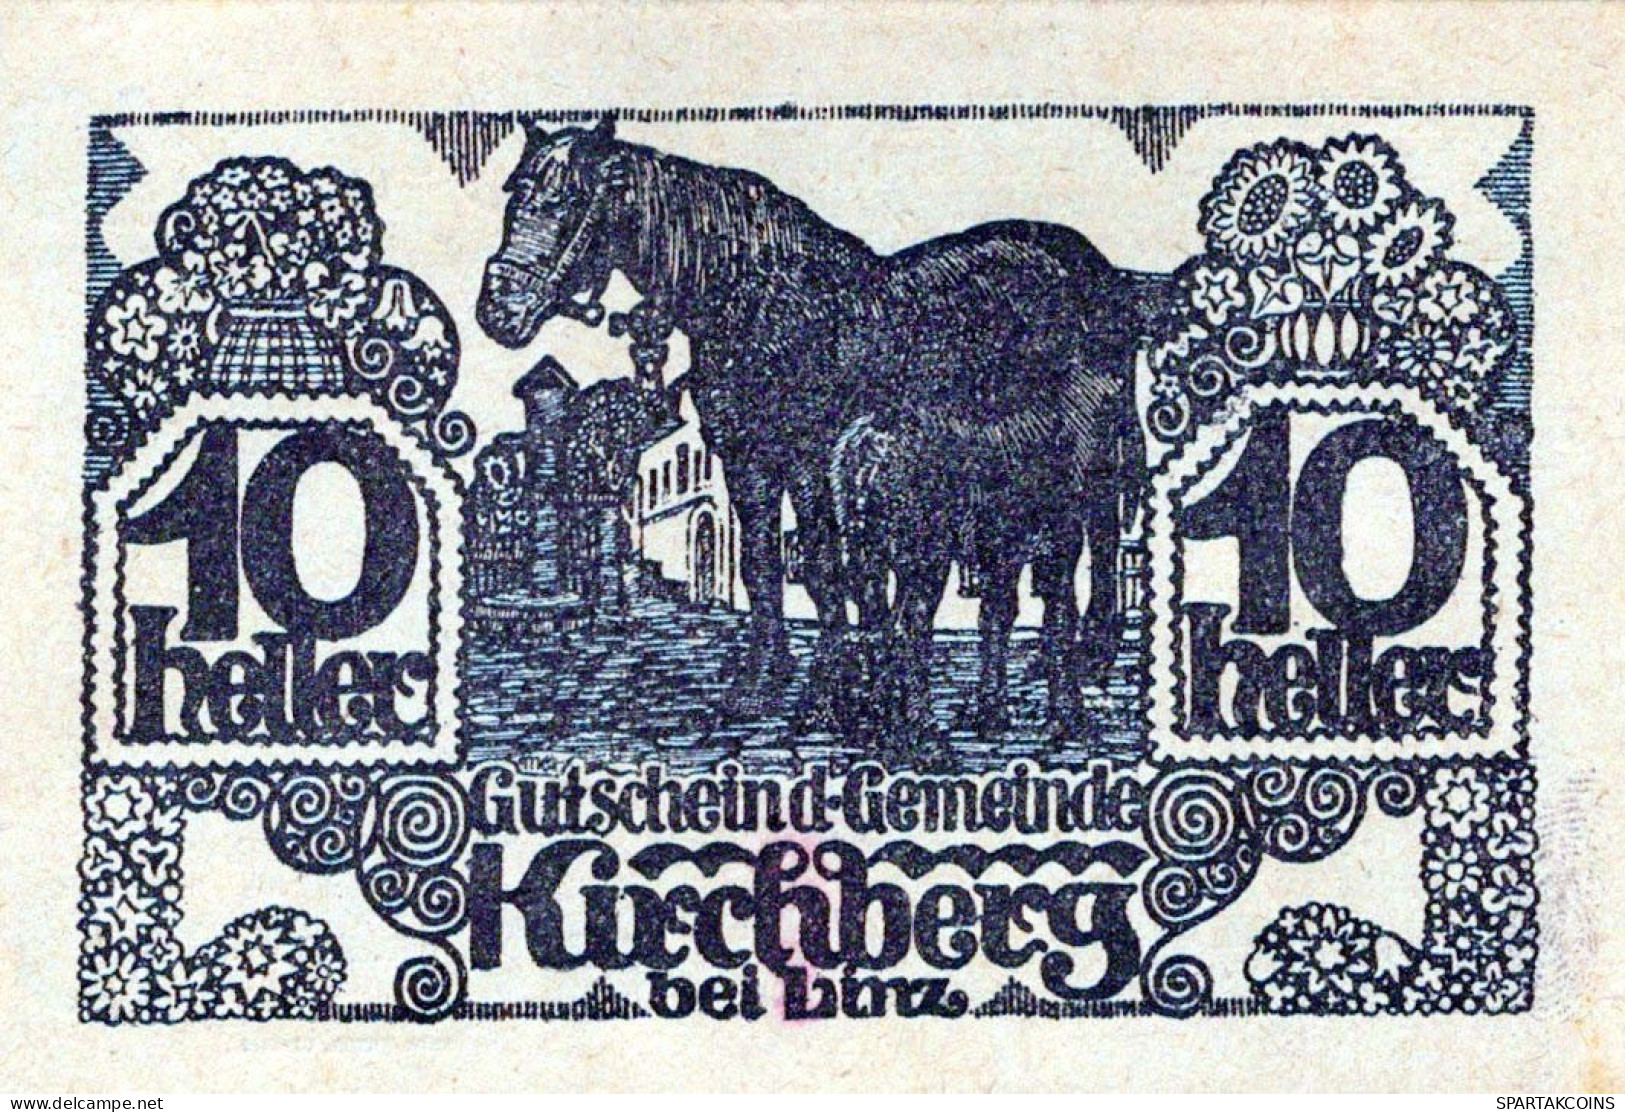 10 HELLER 1920 Stadt KIRCHBERG BEI LINZ Oberösterreich Österreich Notgeld Papiergeld Banknote #PG914 - [11] Emissions Locales